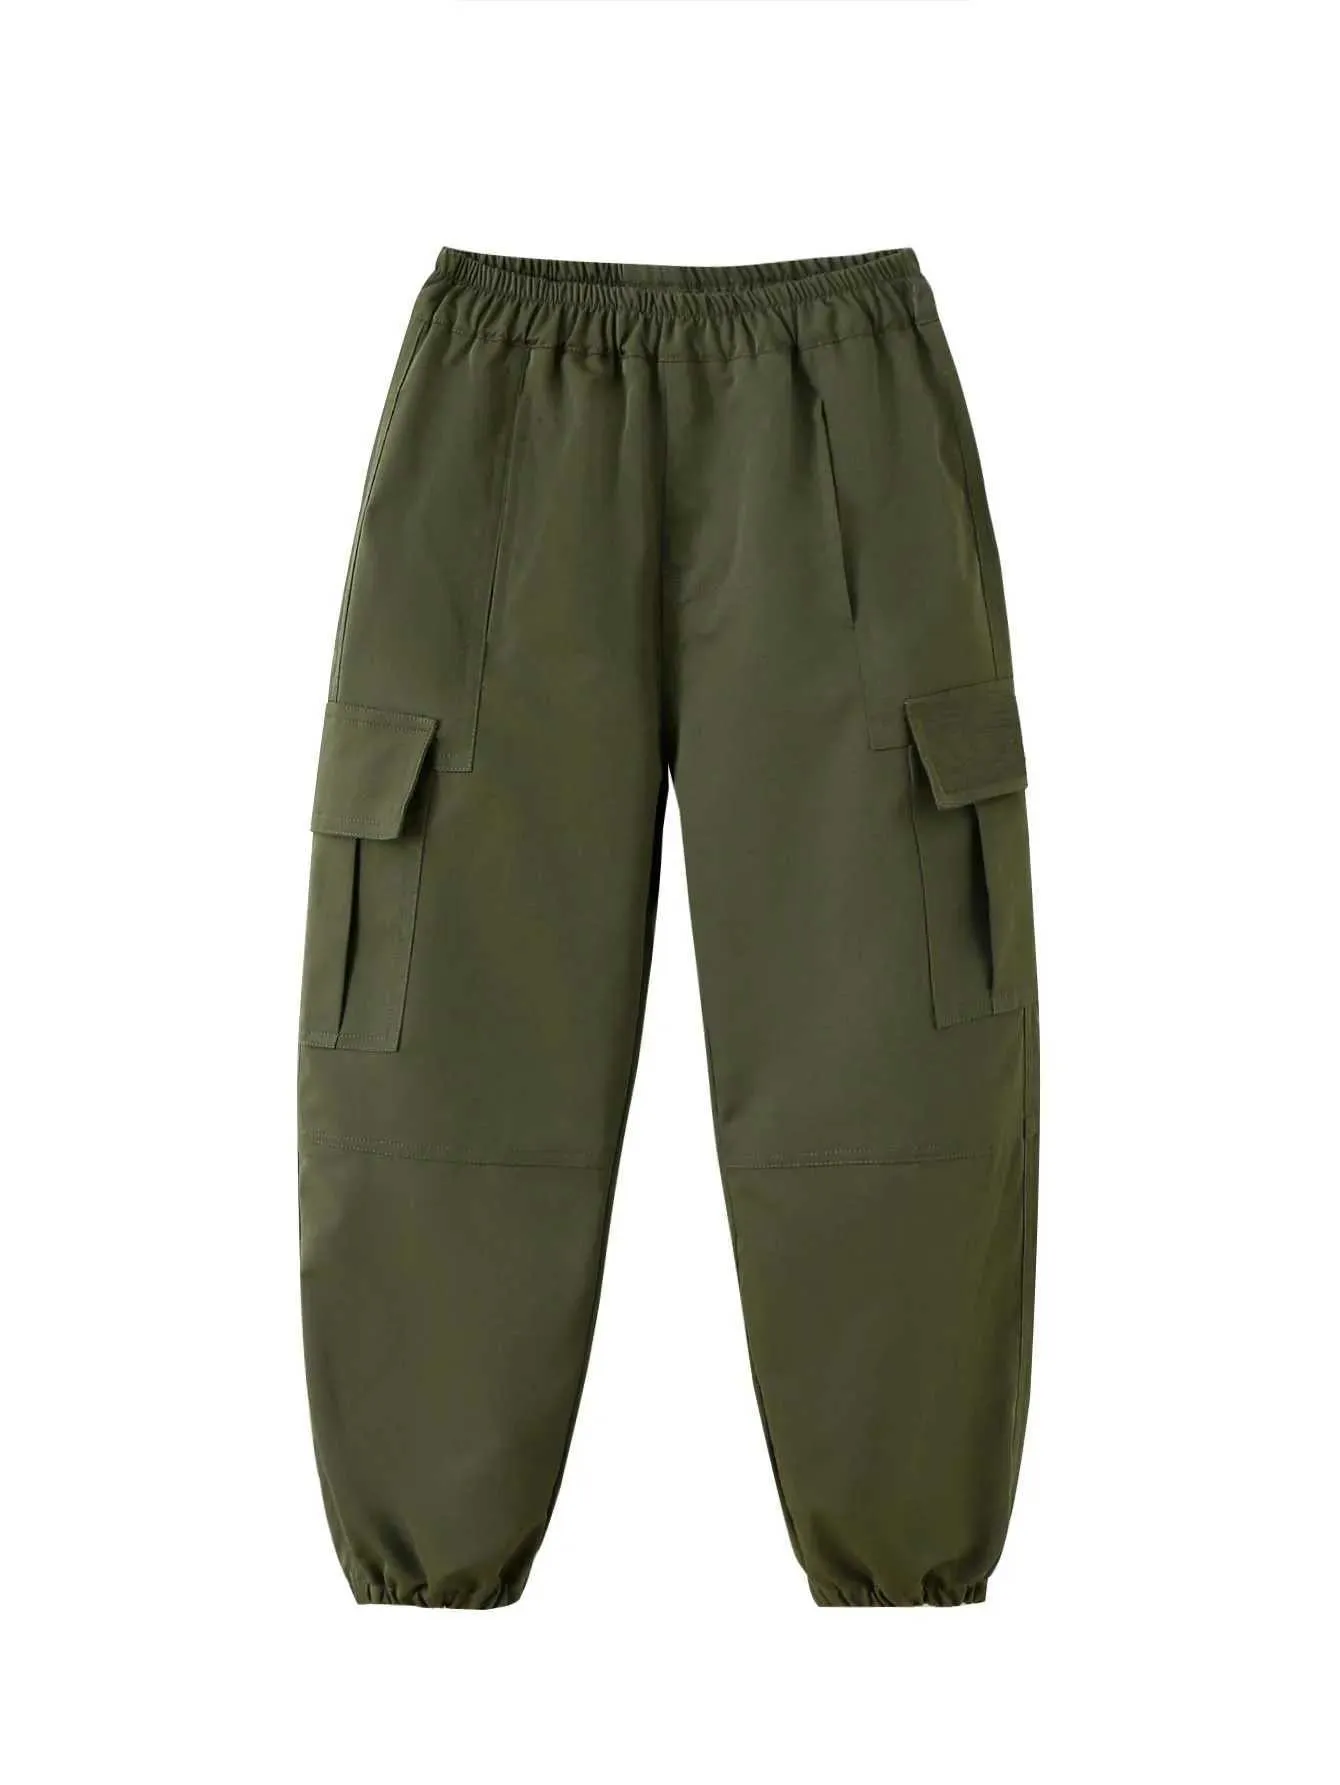 Broek shorts kinderen klassieke merchandise broek multi-colour modieus en comfortabel geschikt voor dagelijkse slijtage kinderen casual pantsL2405